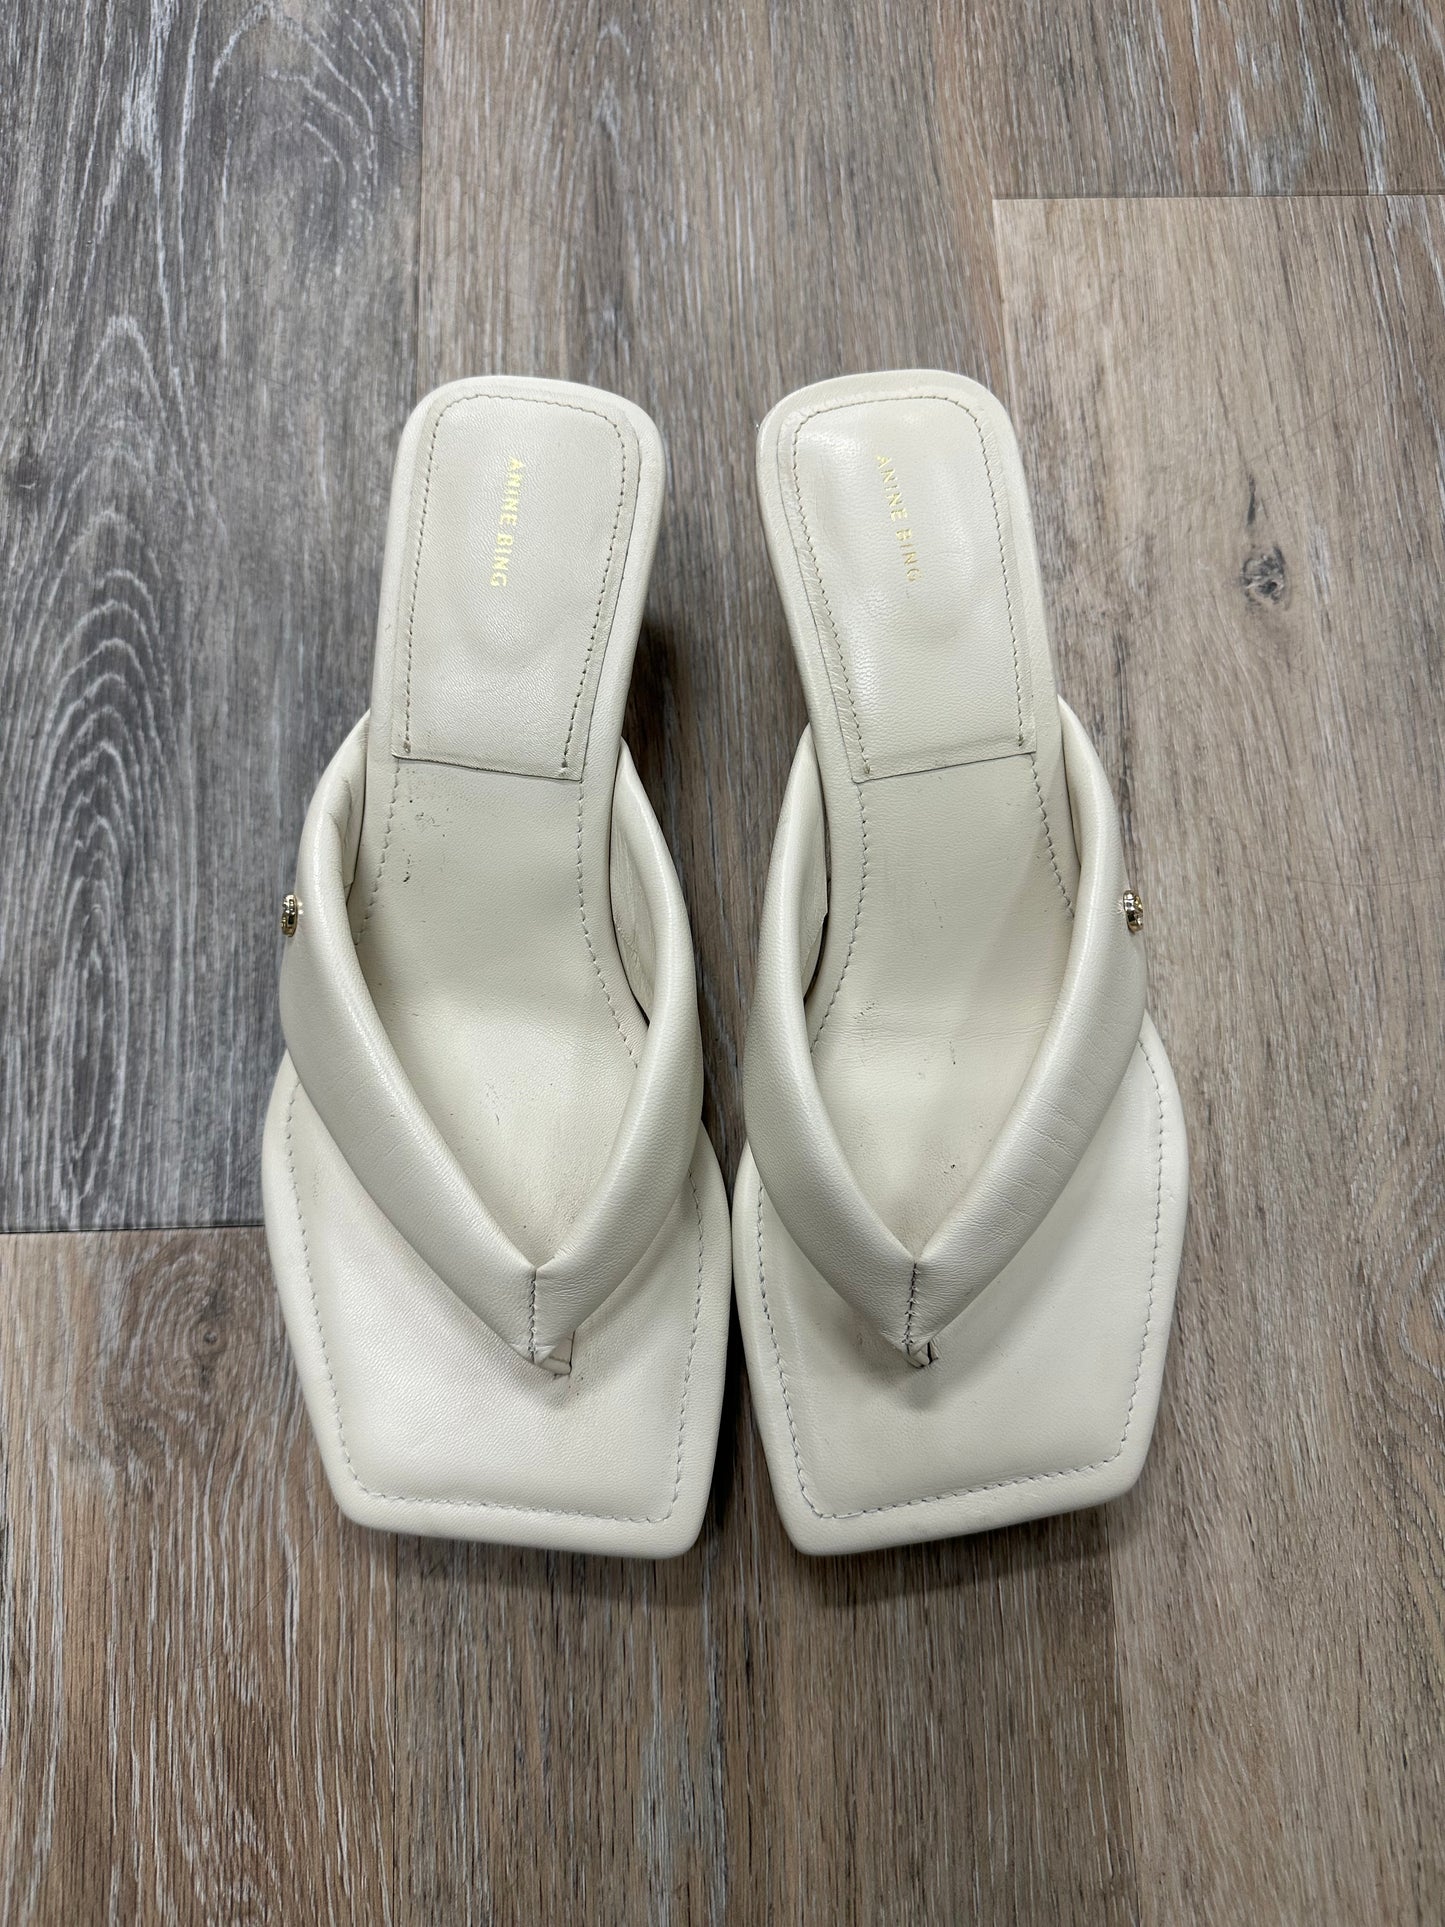 Sandals Designer By Anine Bing  Size: 8